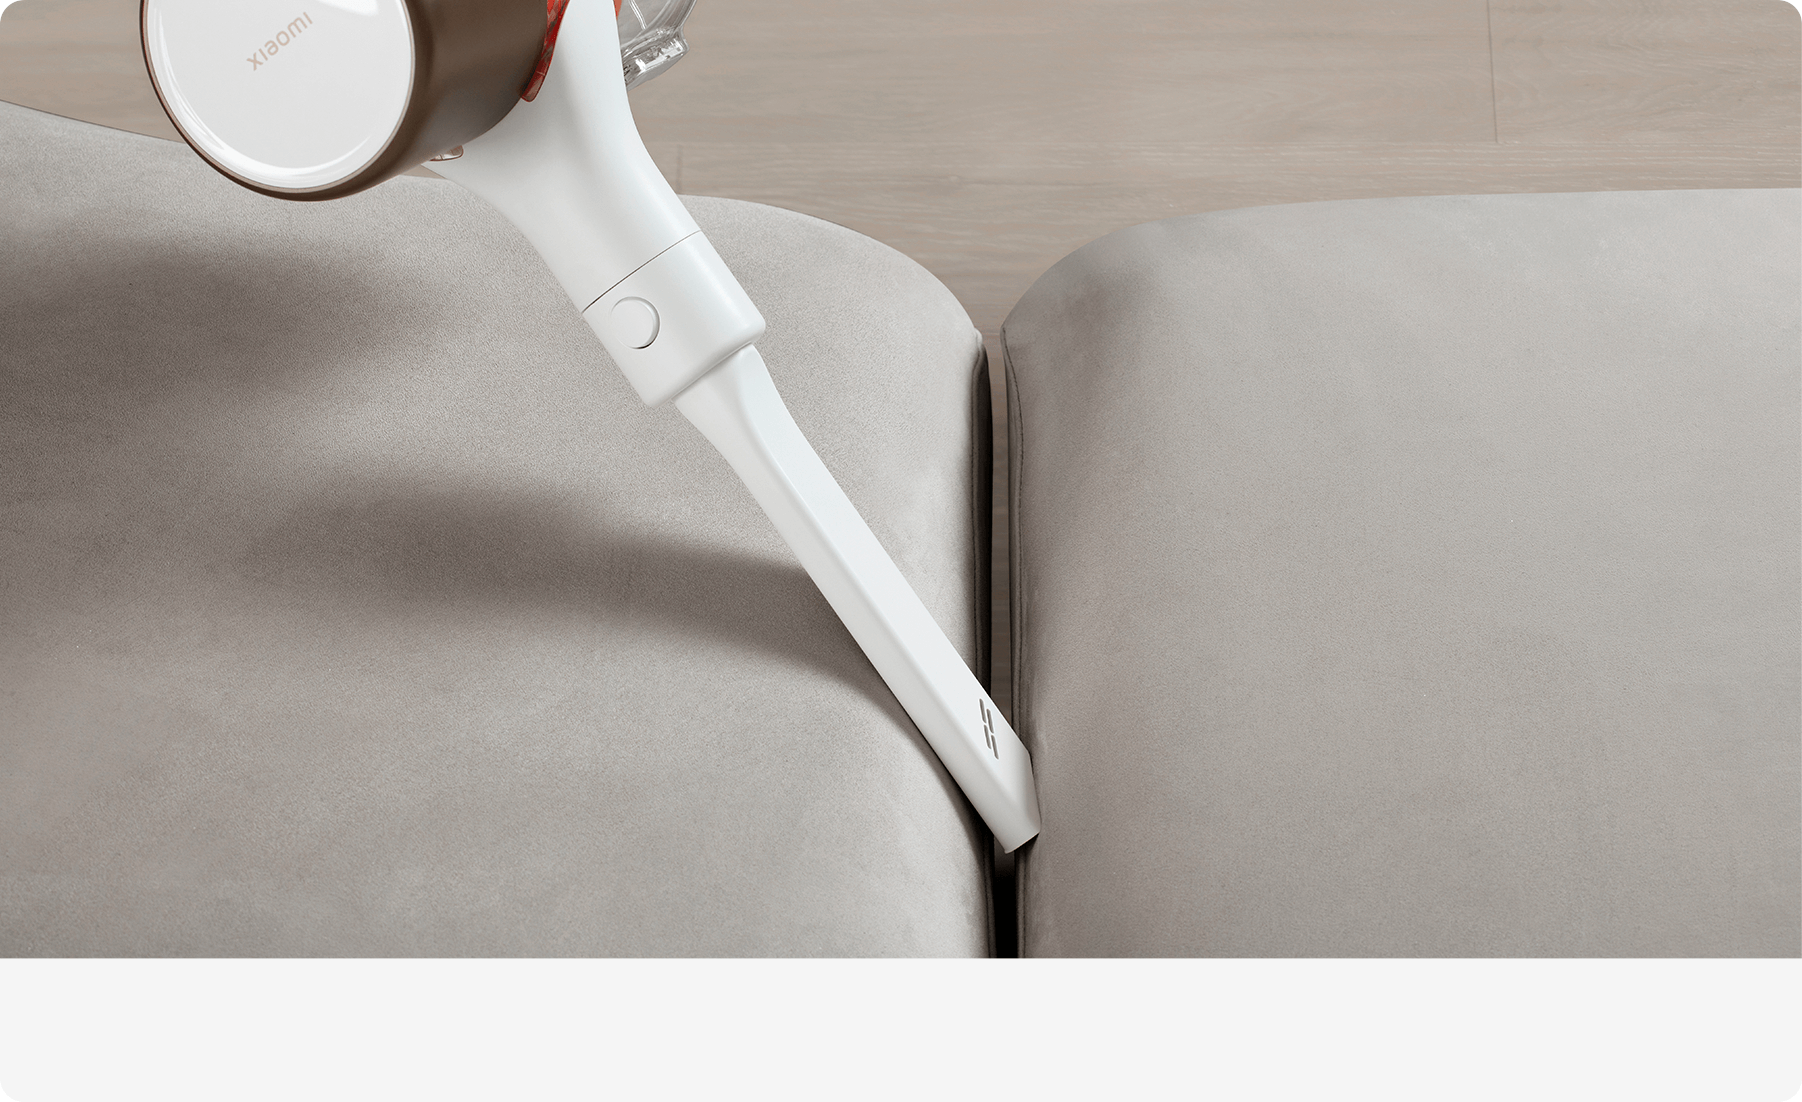 Xiaomi Smart Vacuum Cleaner G10 Plus